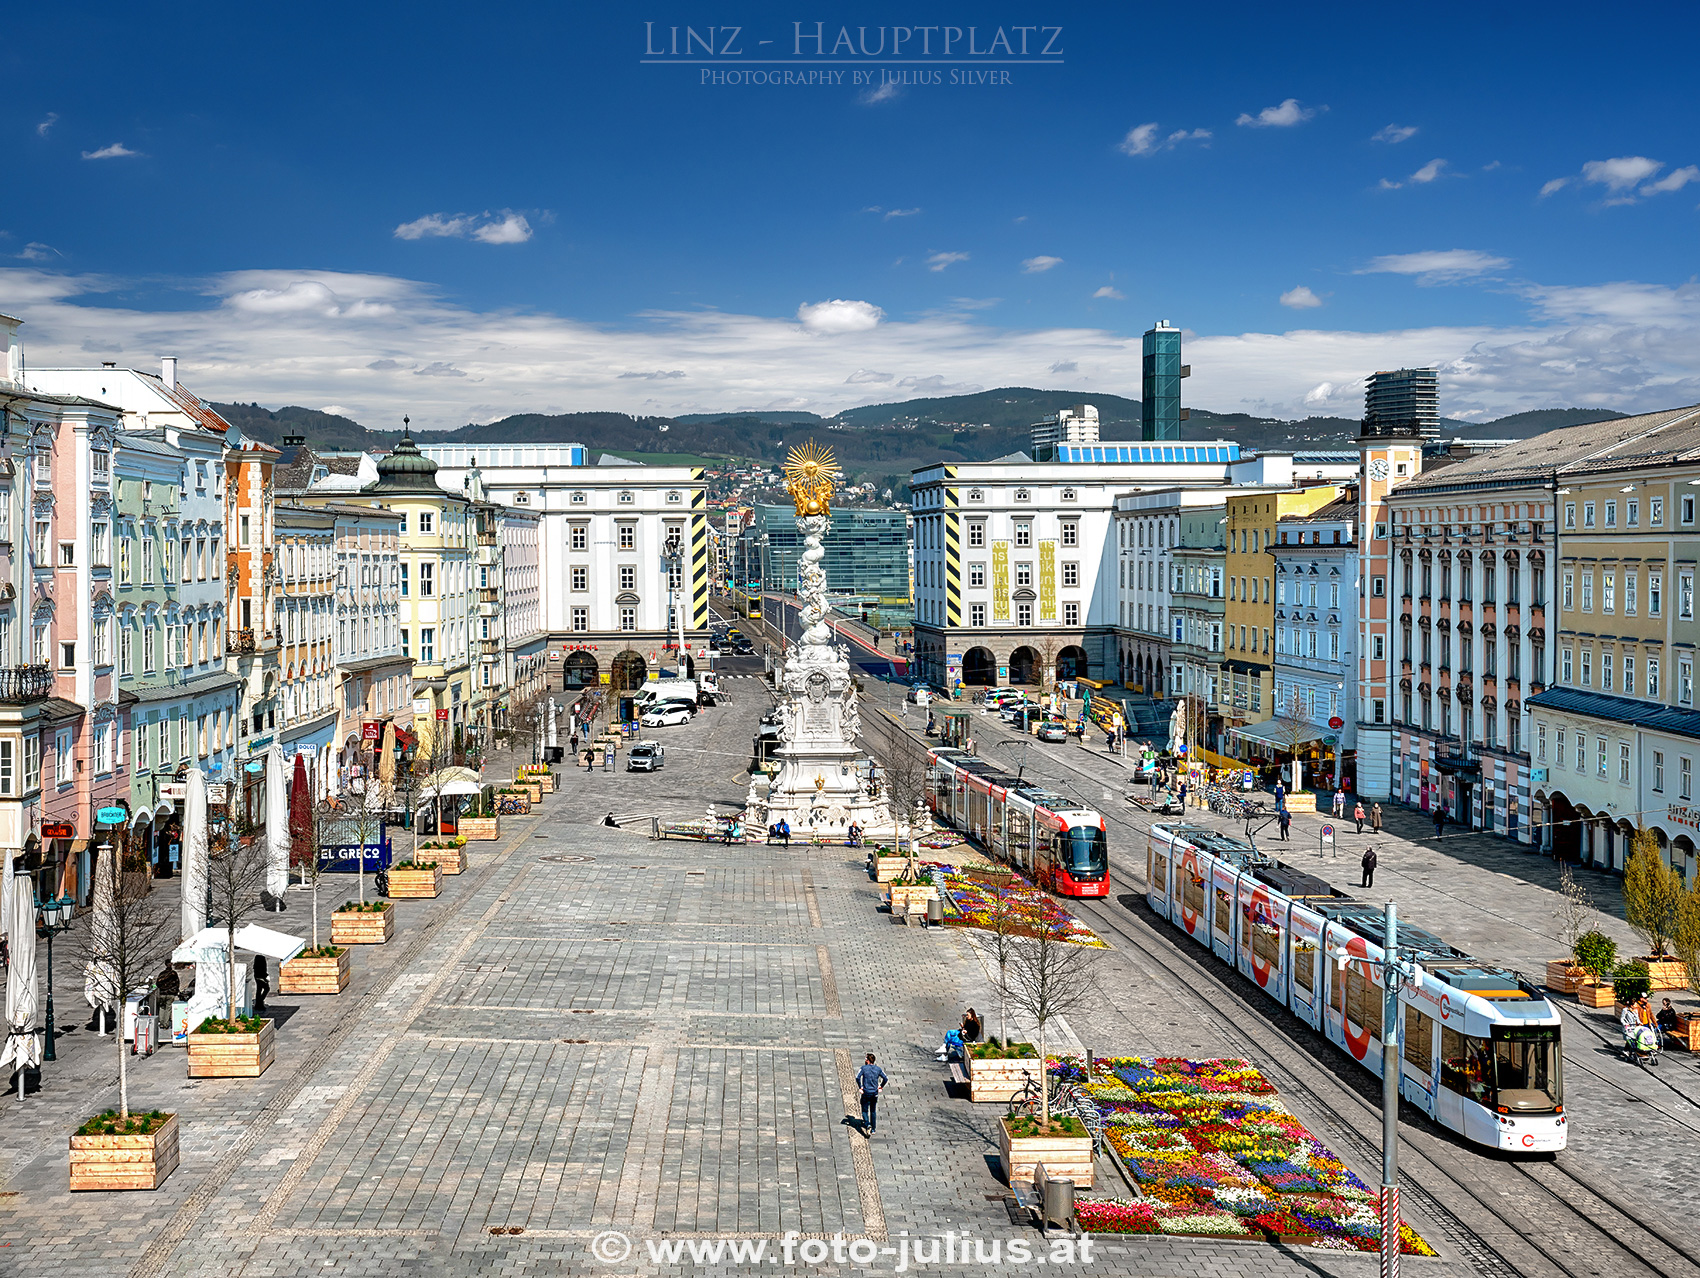 Linz_203a_Hauptplatz.jpg, 1,3MB